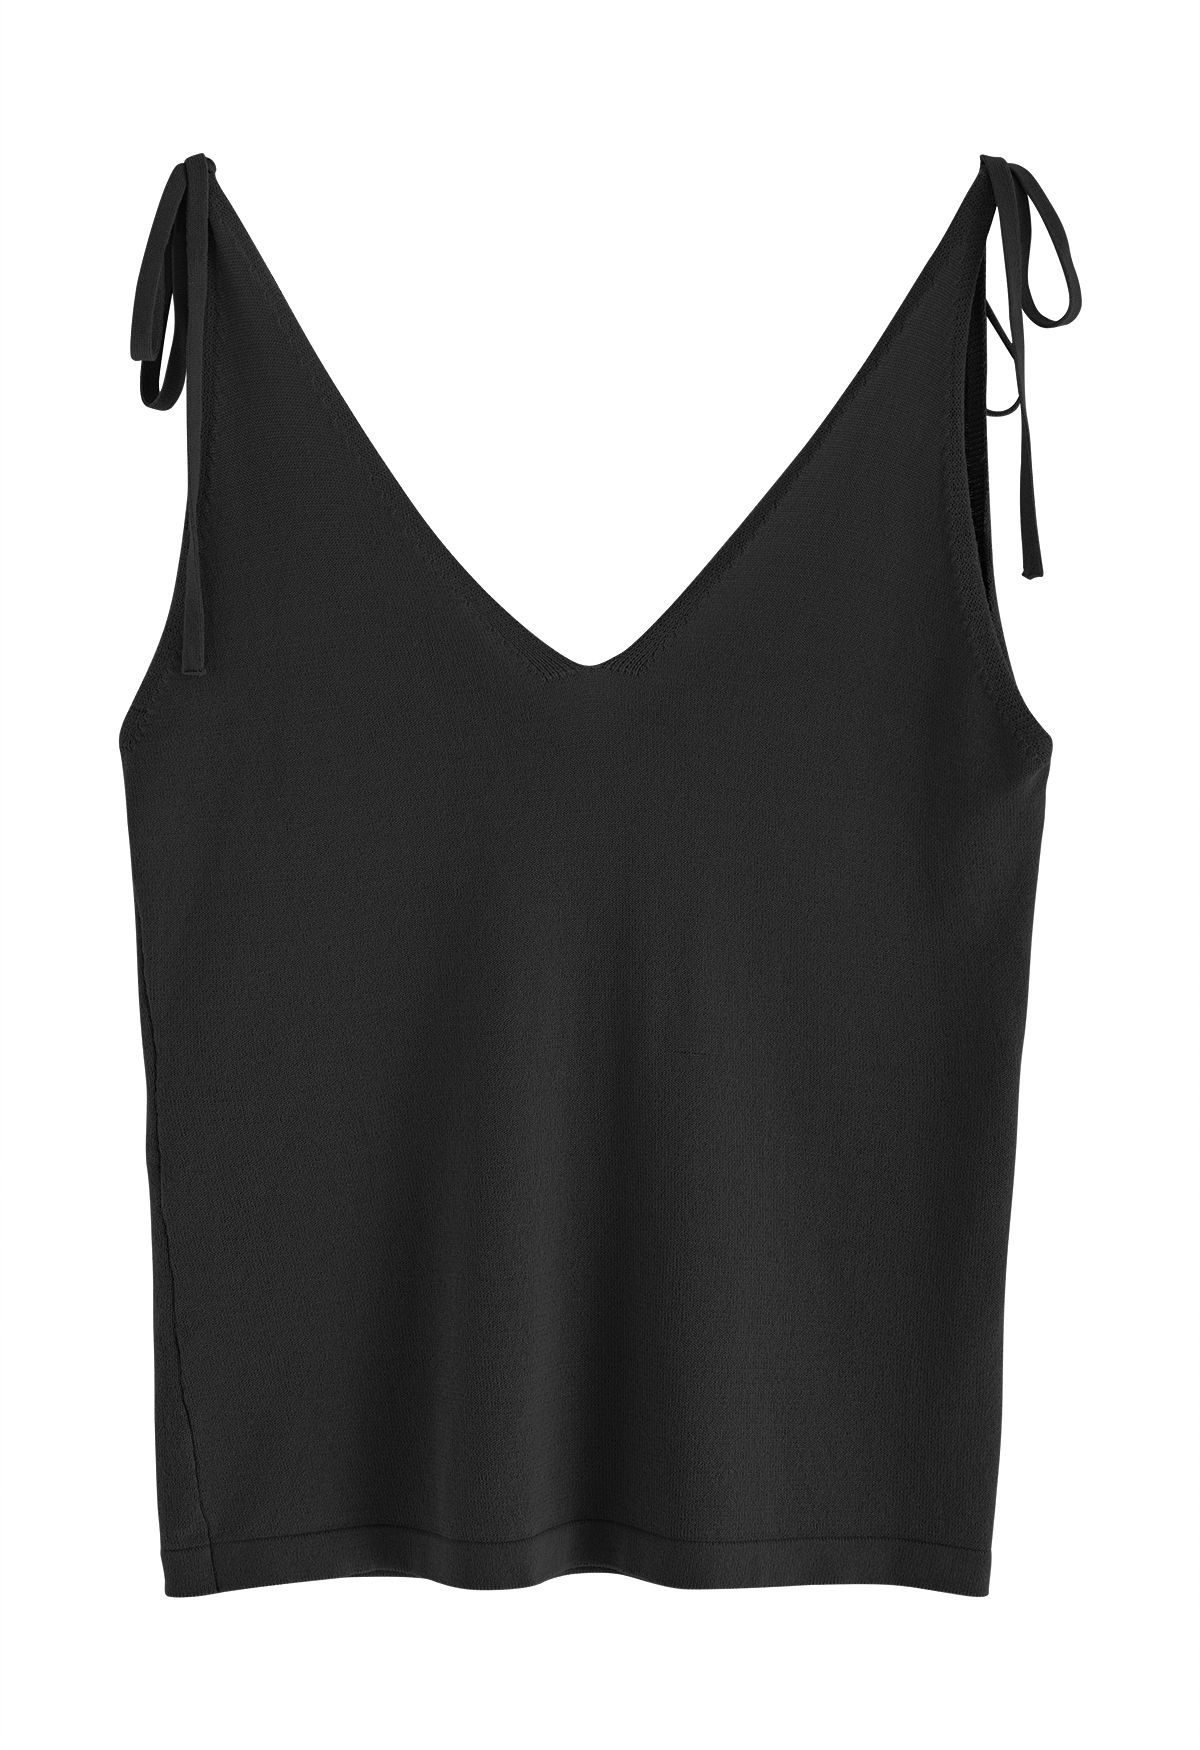 Camiseta sin mangas con cuello en V y hombros anudados en negro